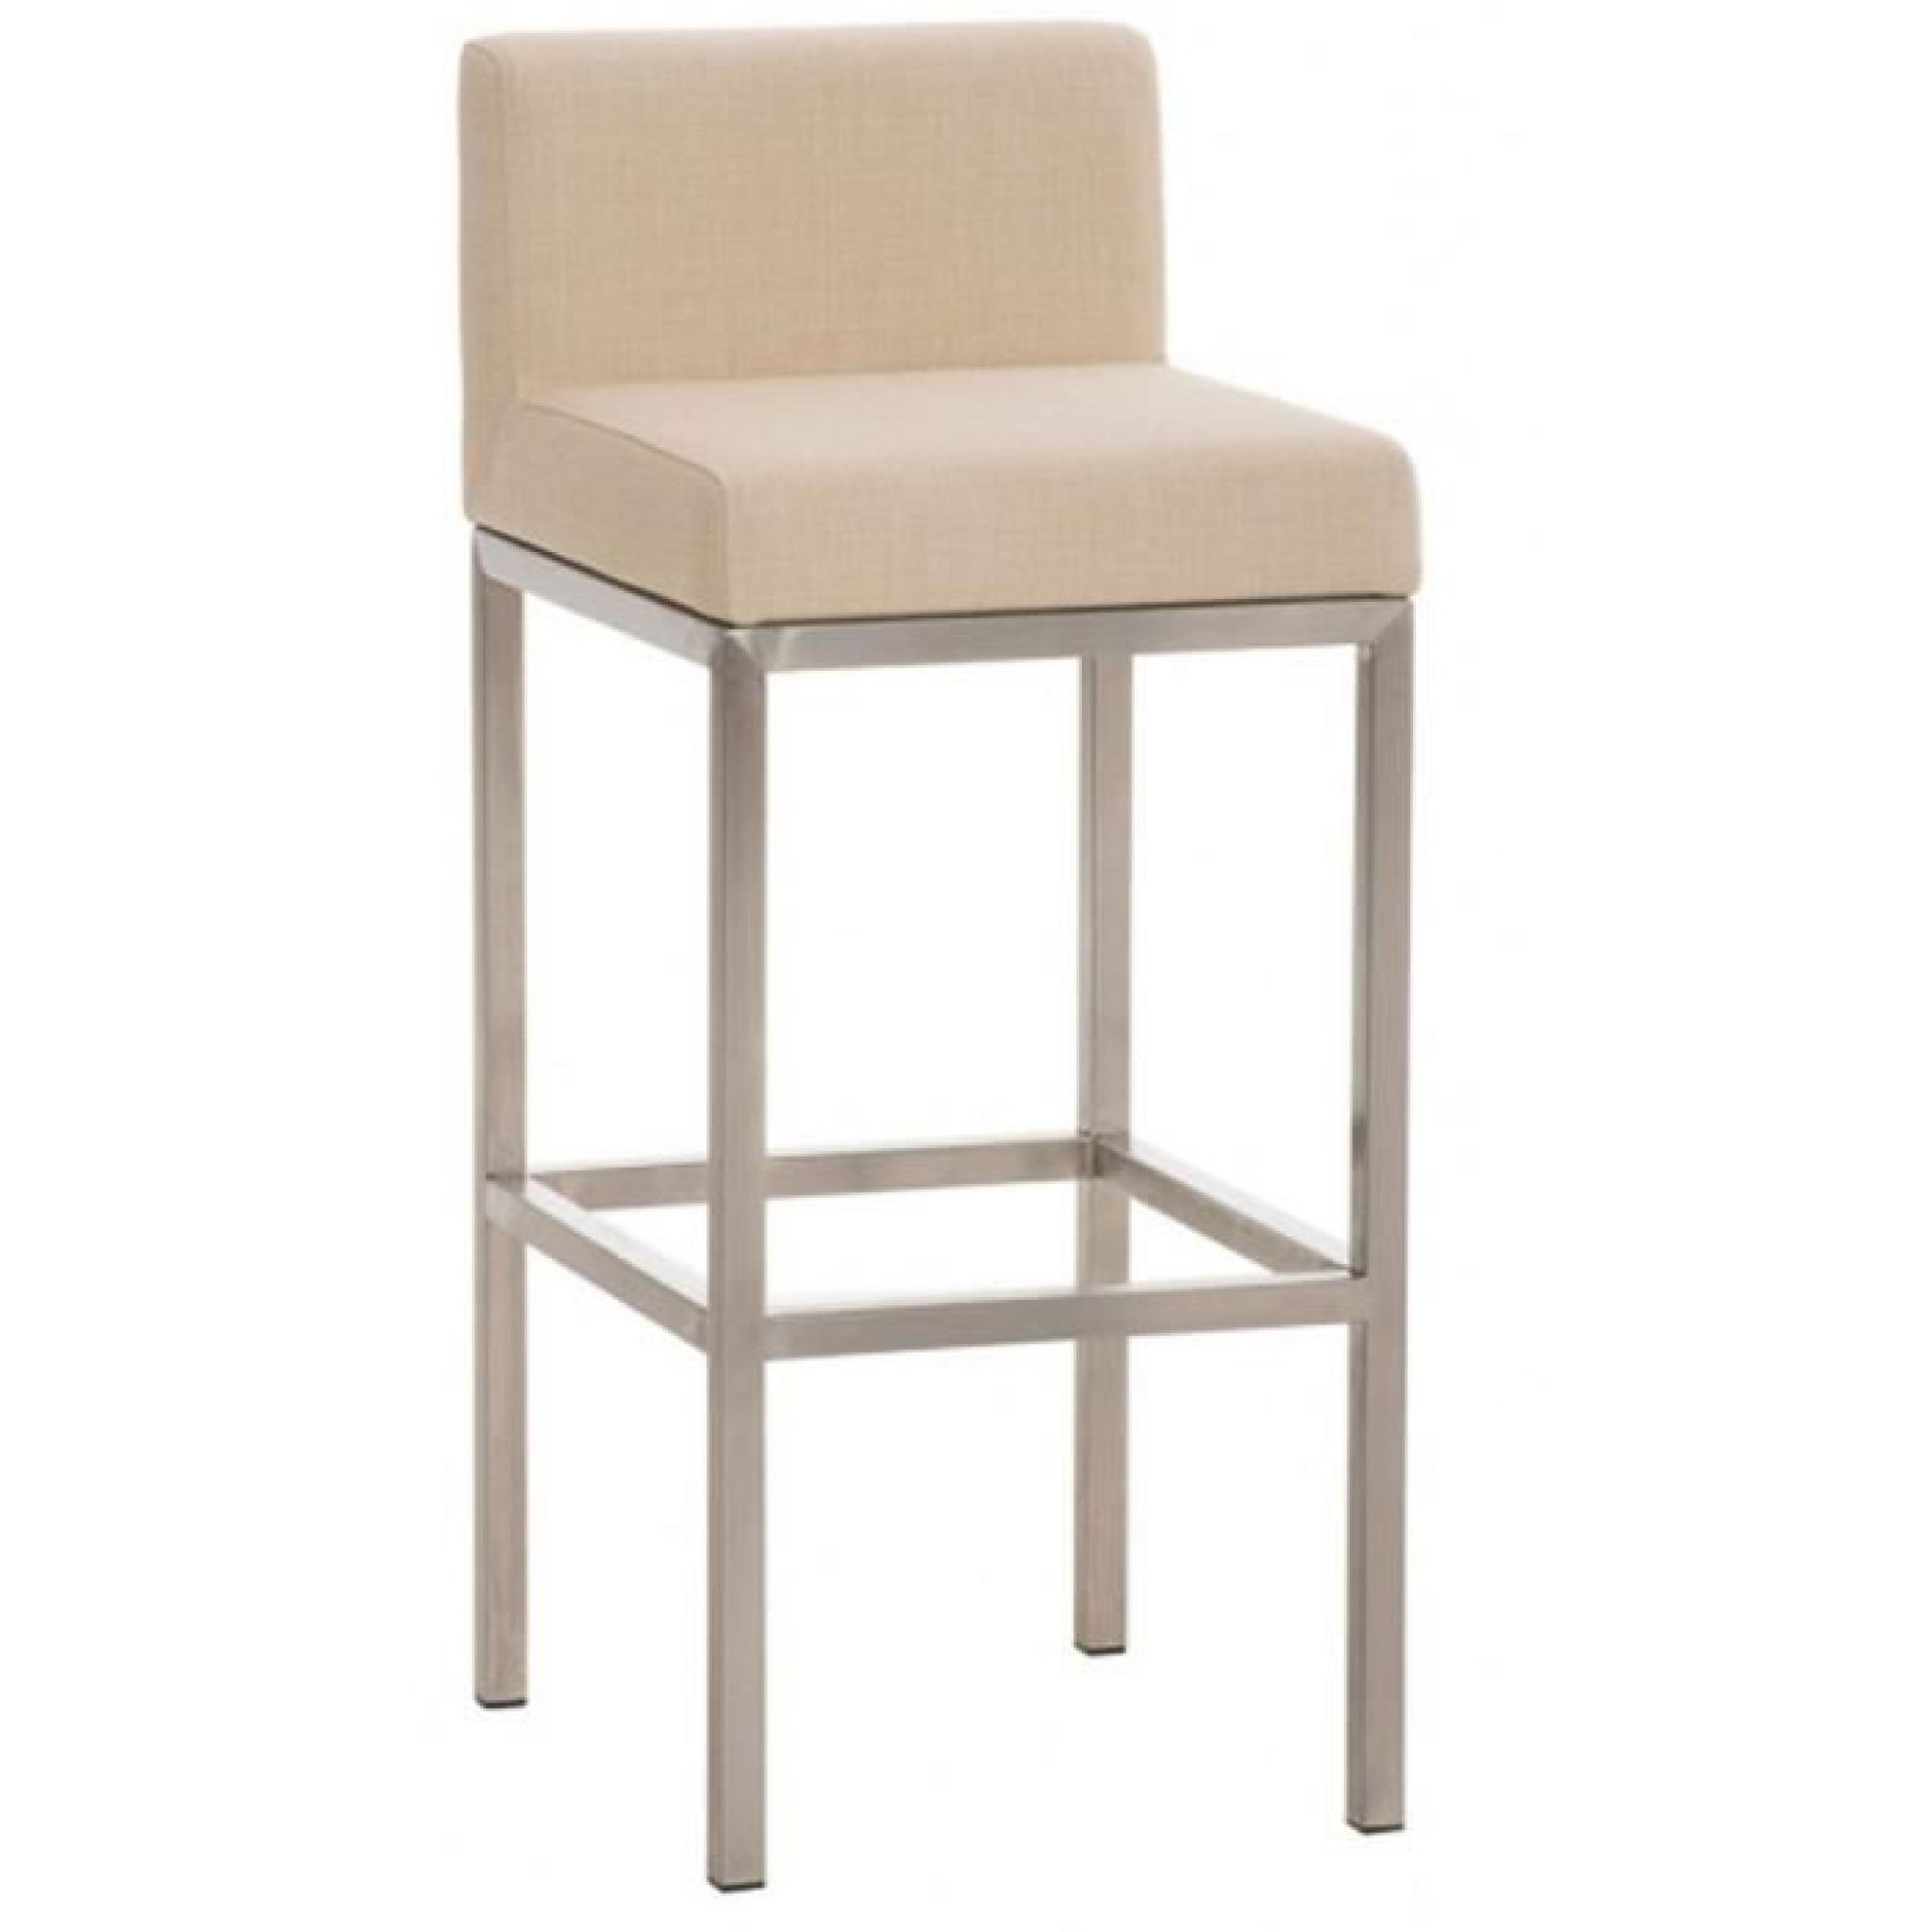 Chaise de bar en tissu et acier inoxydable coloris crème, H 96,5 x L 40 x P 44,5 cm